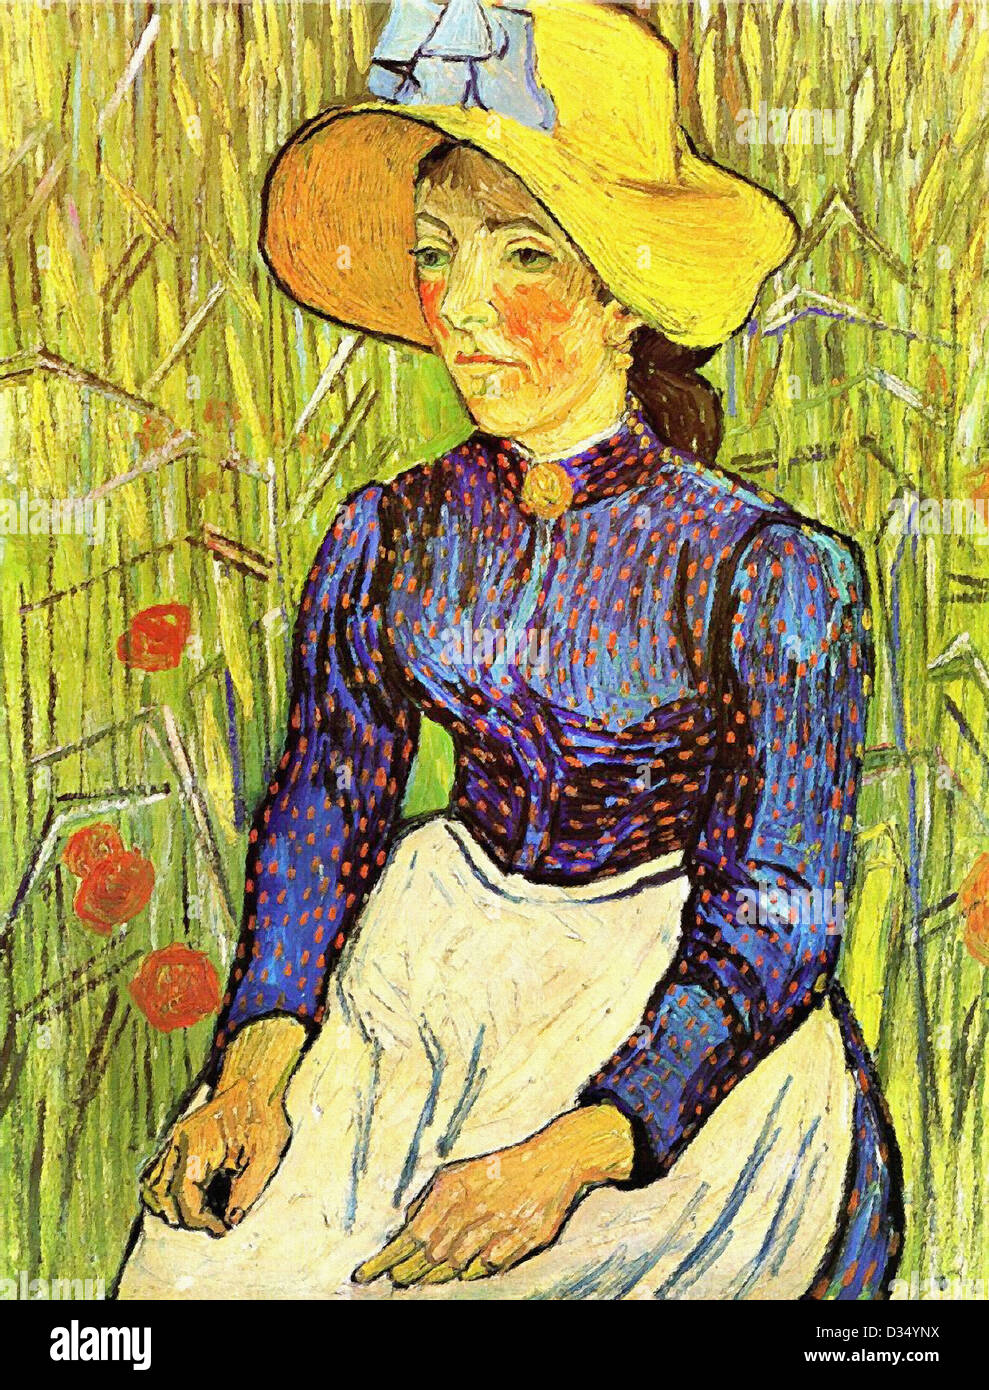 Vincent Van Gogh, junge Bäuerin mit Strohhut sitzt vor einem Weizenfeld. 1890. Post-Impressionismus. Öl auf Leinwand. Stockfoto